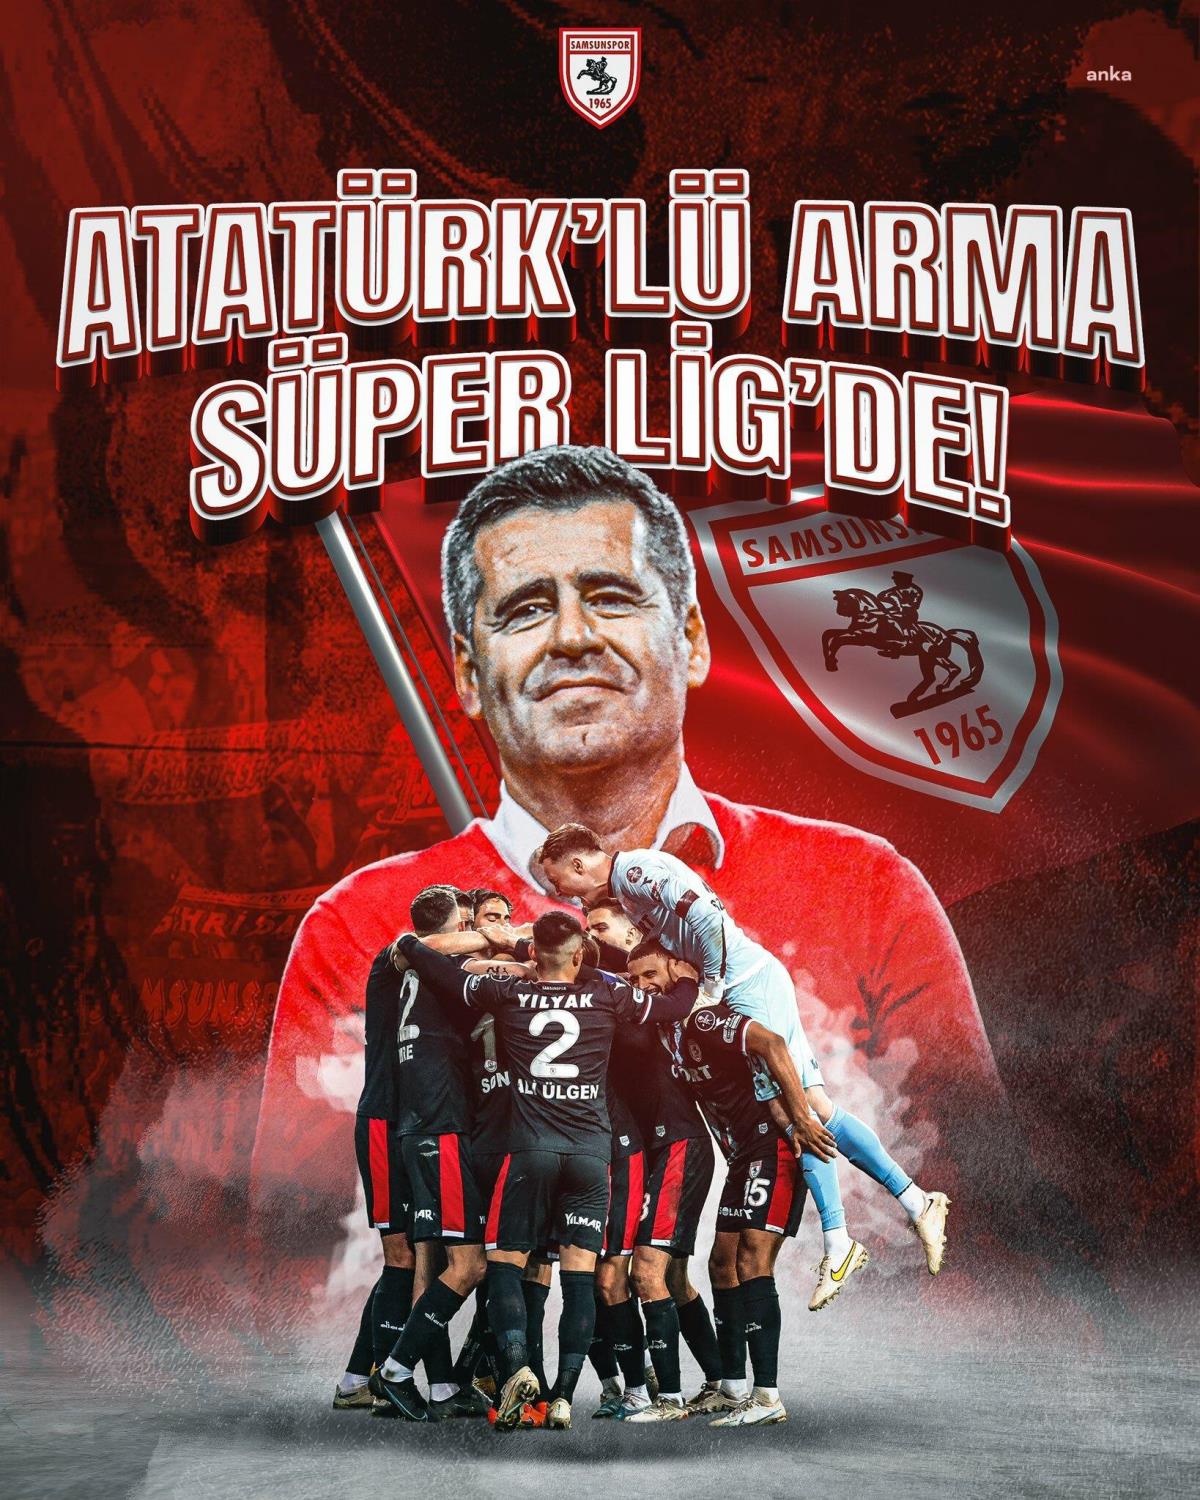 Üstün Lig'e Yükselen Birinci Ekip Samsunspor Oldu: "Cumhuriyet'in 100.Yılında, Atatürklü Arma Harika Lig'de"